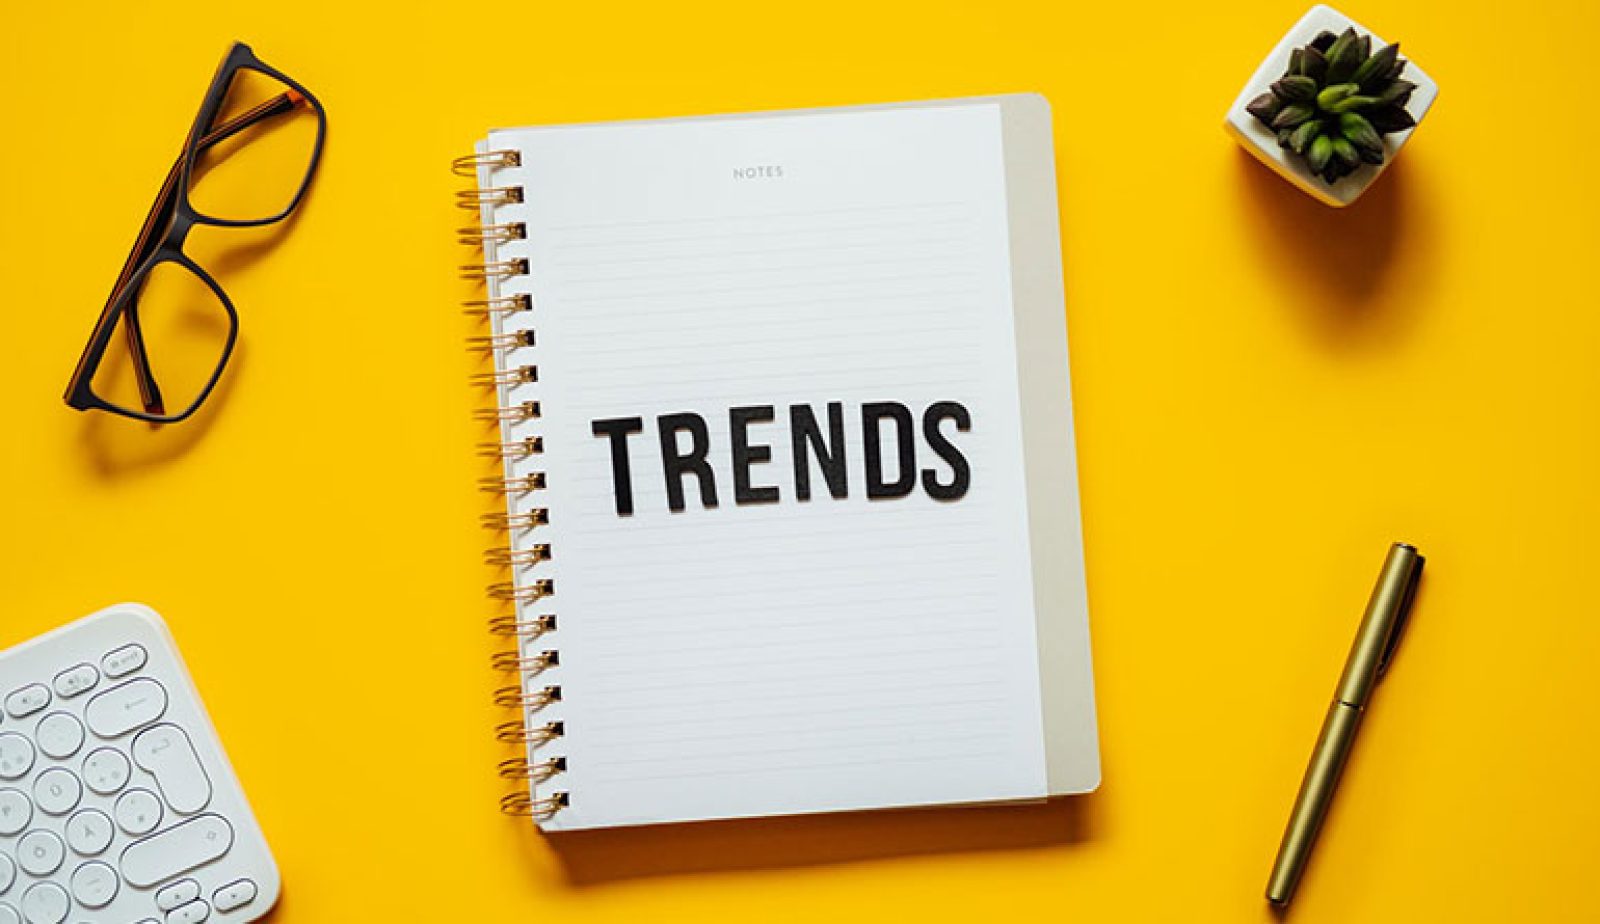 Top 10 Latest Web Design Trends